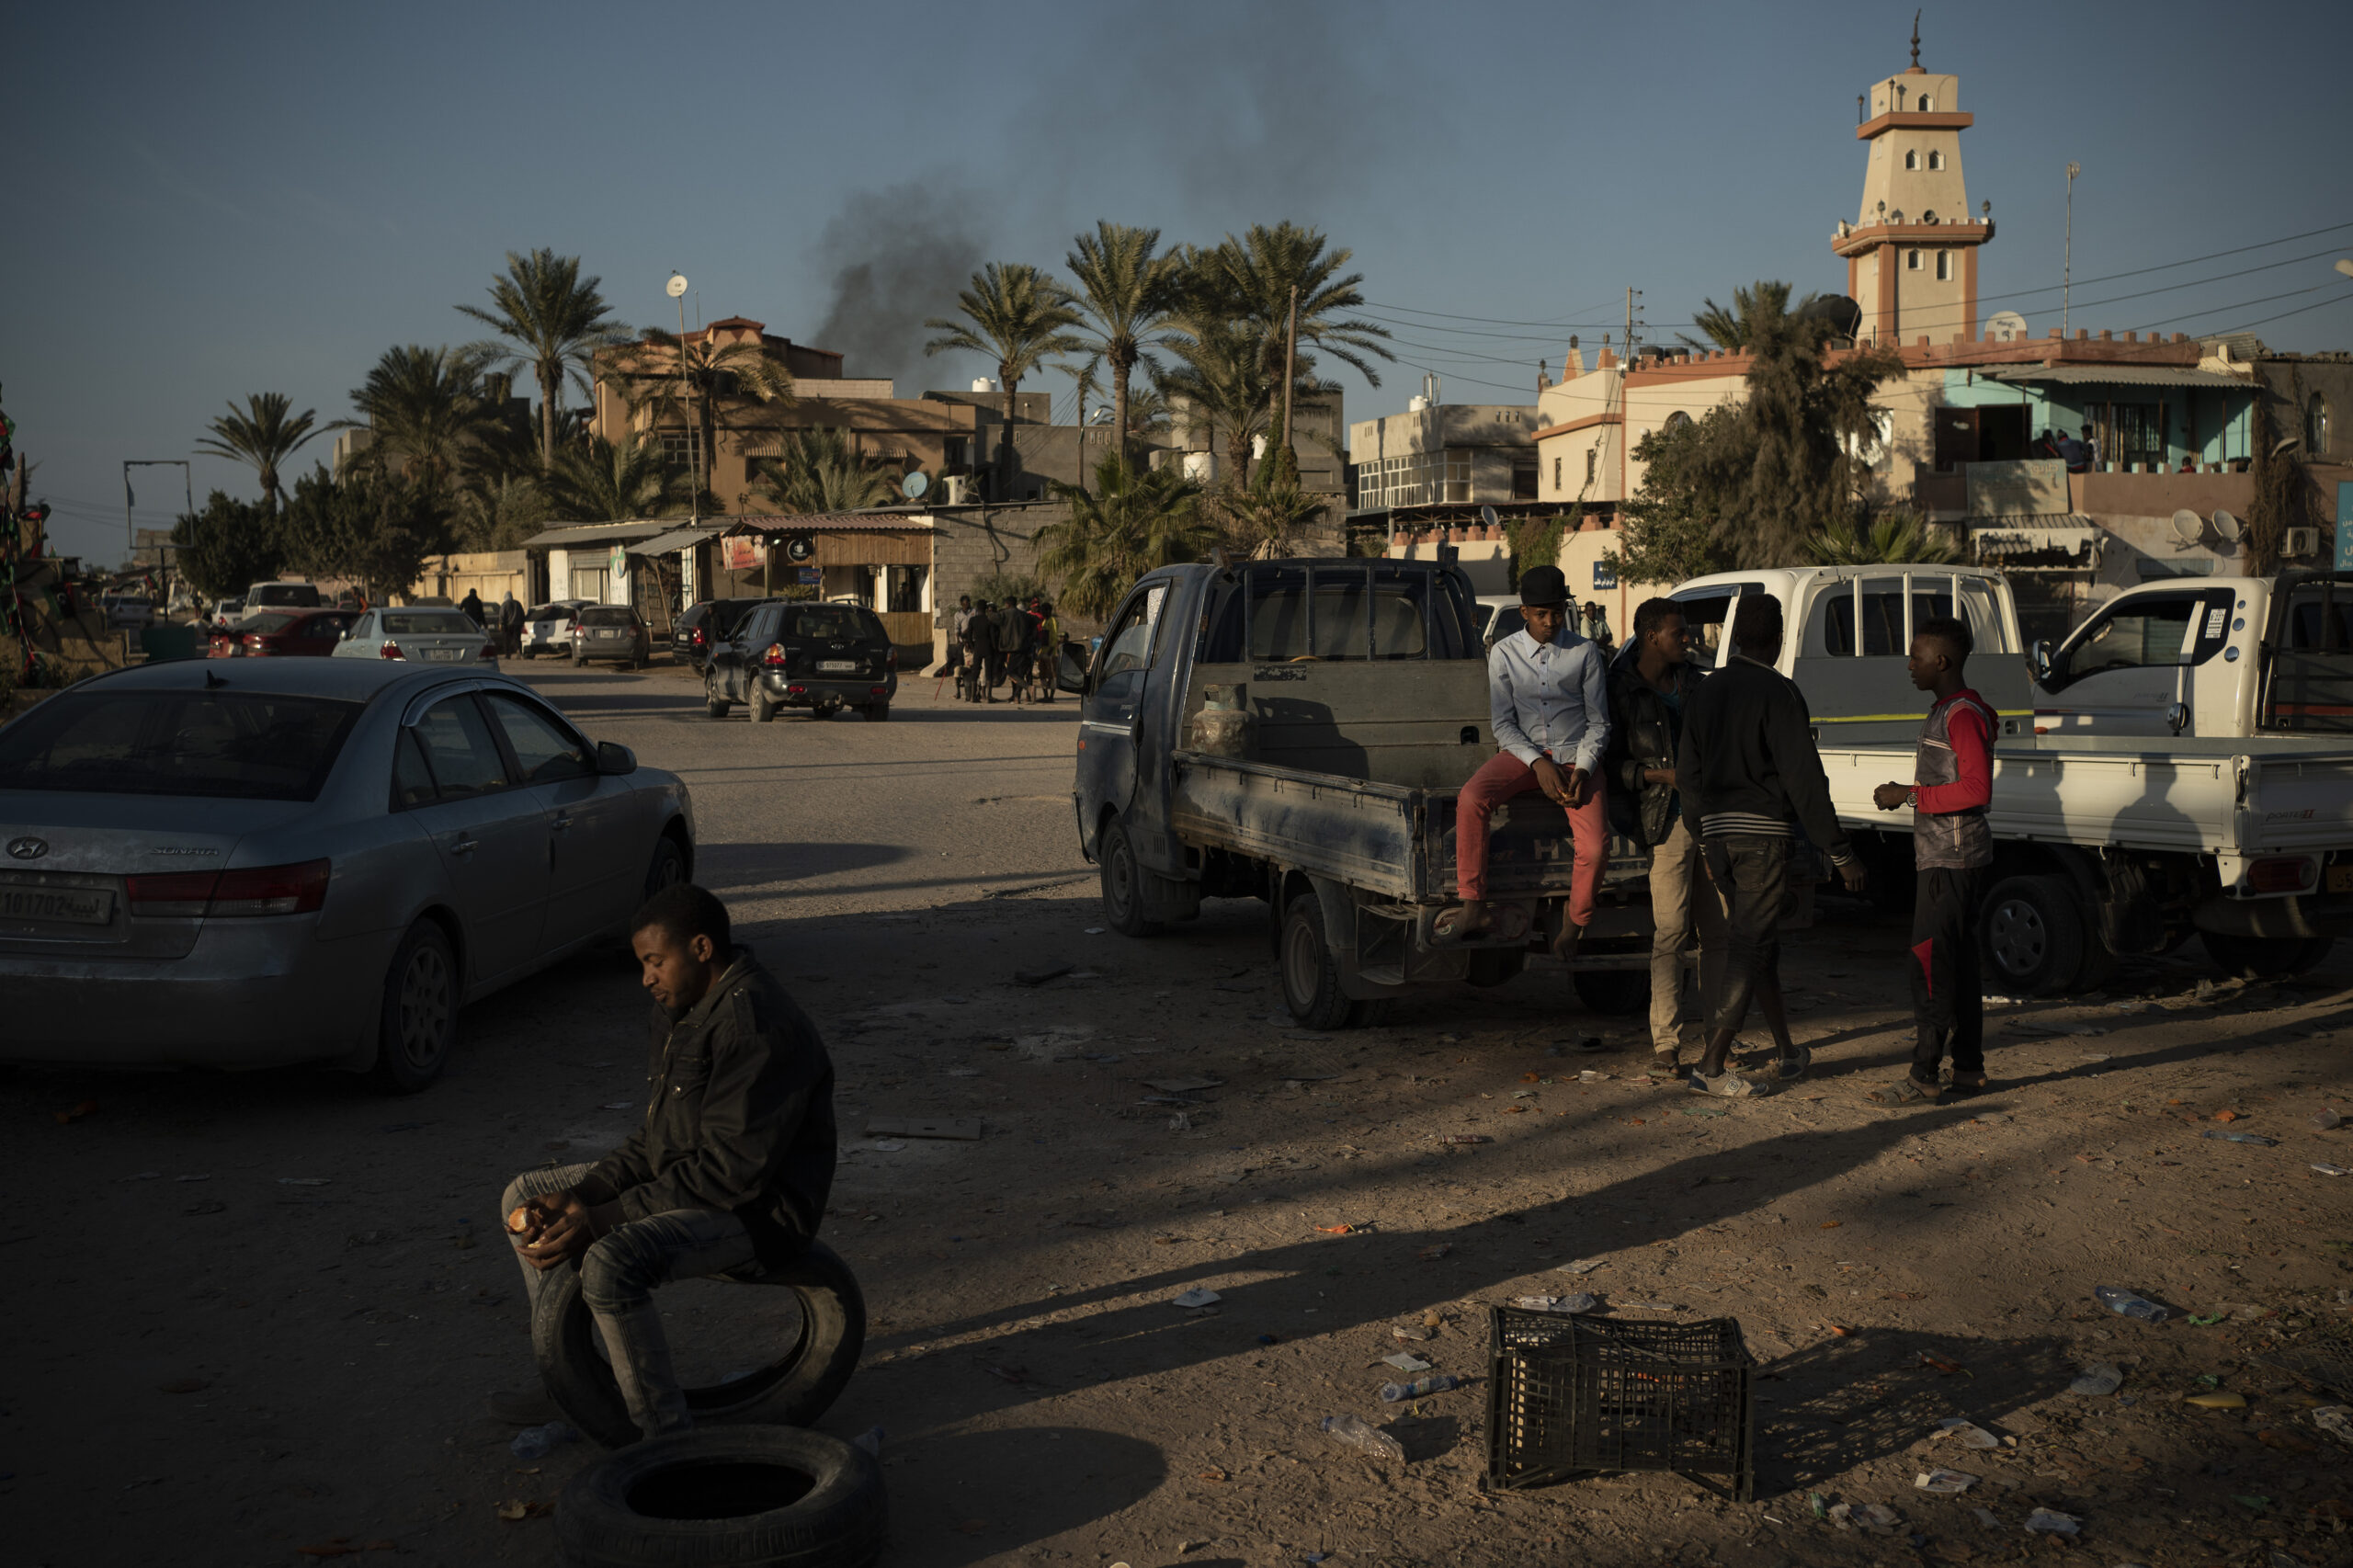 Λιβύη: Πέντε άμαχοι νεκροί, ο Χάφταρ σφυροκοπεί ξανά την Τρίπολη